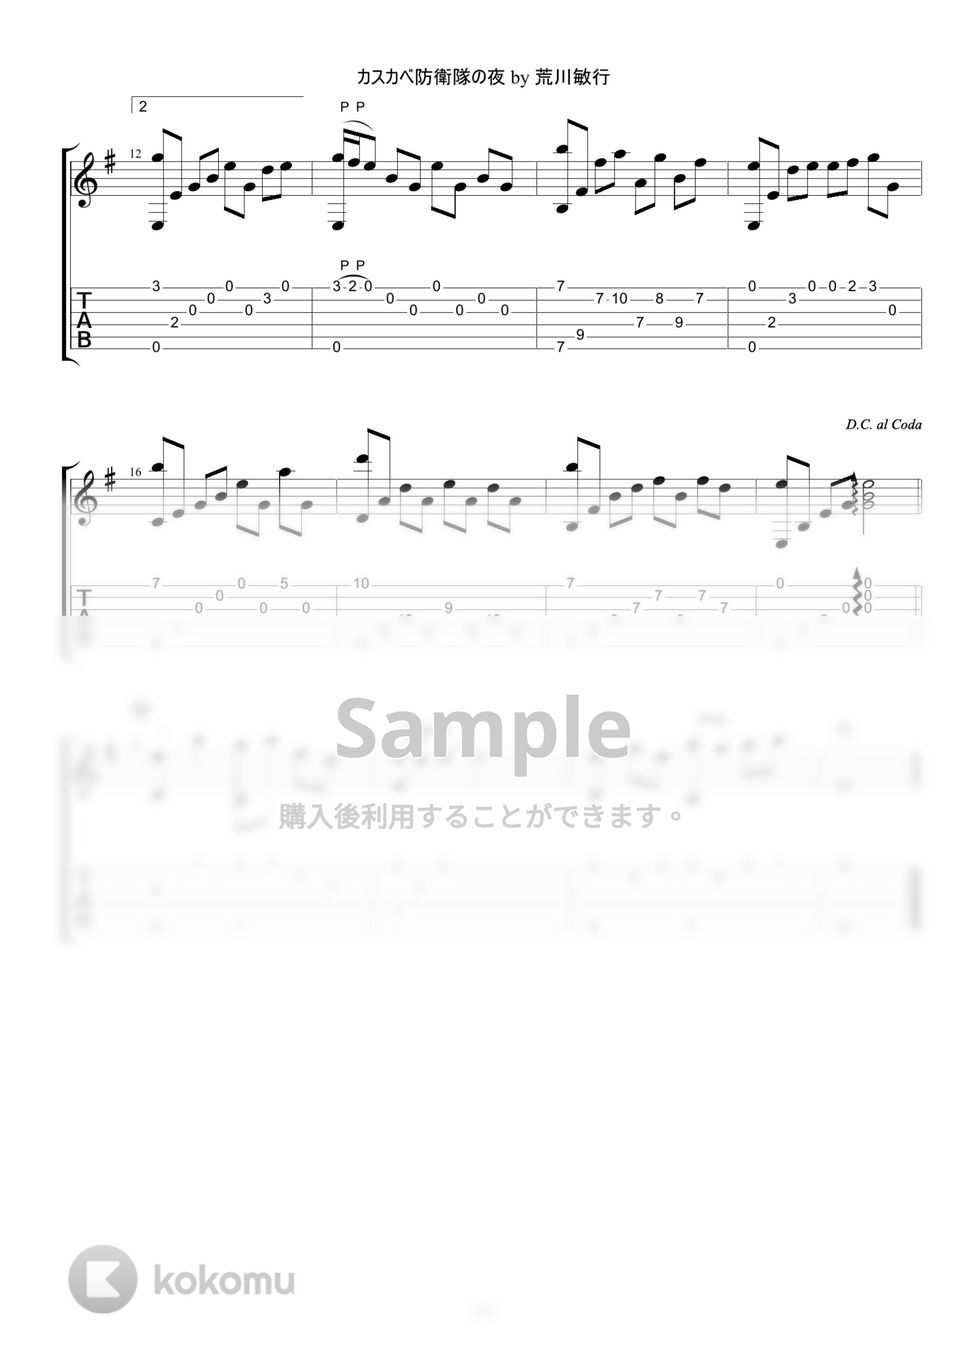 クレヨンしんちゃん - カスカベ防衛隊の夜 (ソロギターアレンジ) by ぎたーきたー